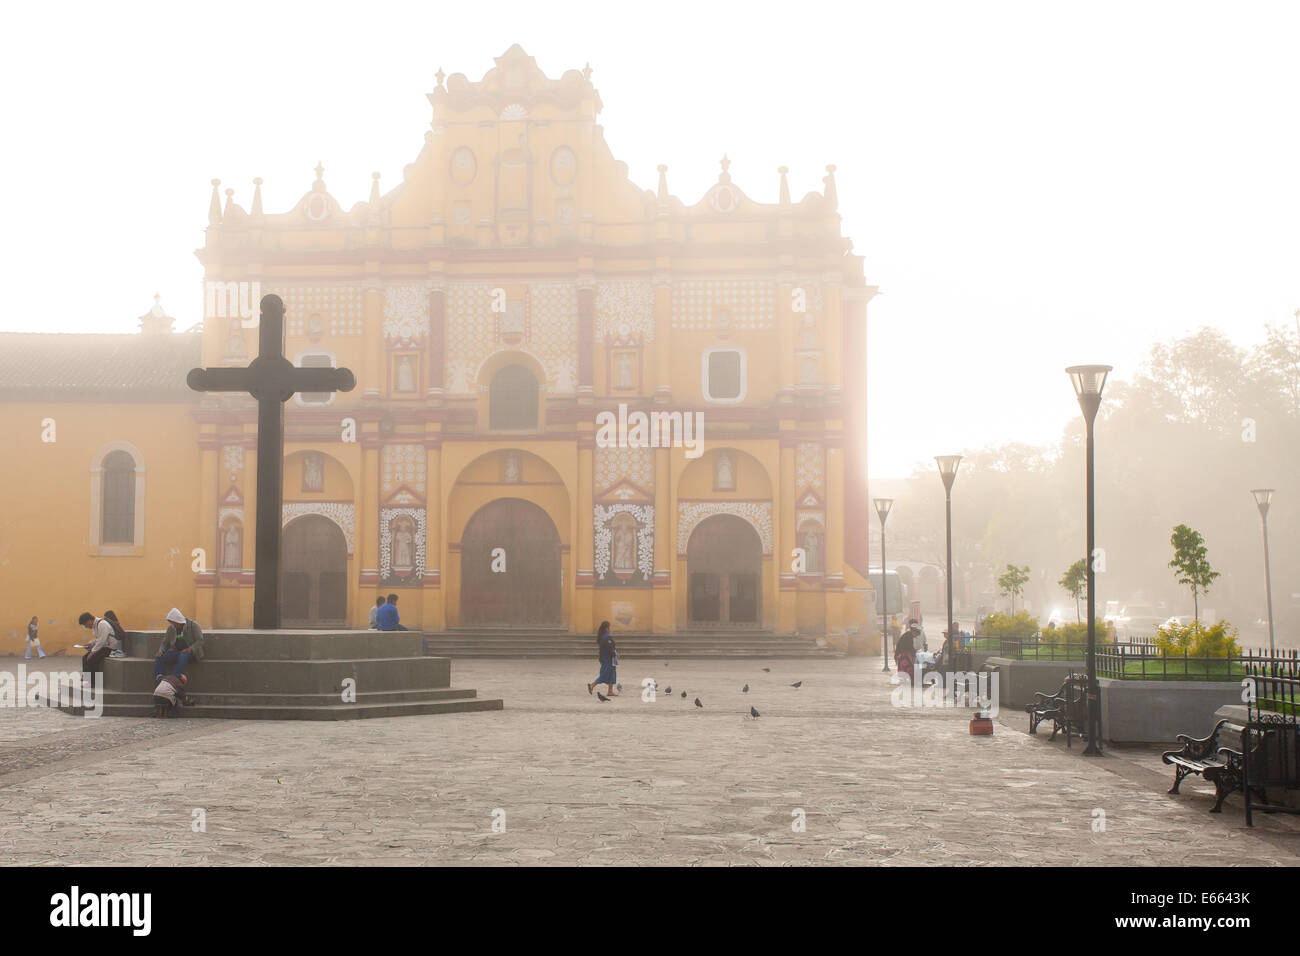 A foggy morning in the plaza of San Cristobal de las Casas, Chiapas, Mexico. Stock Photo